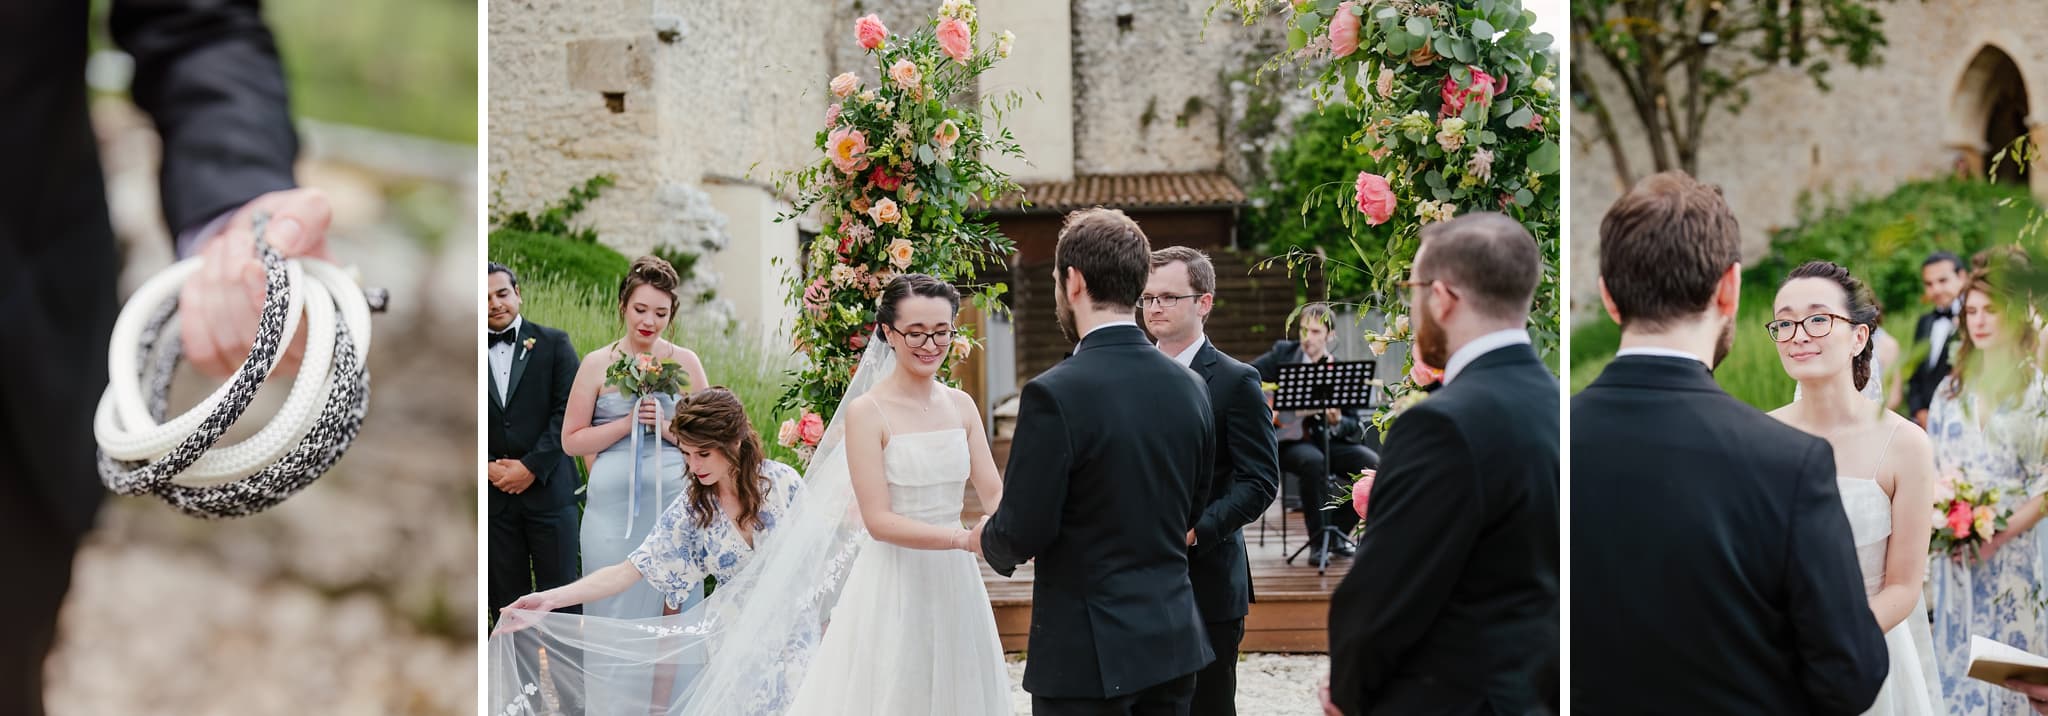 fotografo-matrimonio-cerimonia-tight-the-knot-monastero-fortezza-santo-spirito-abruzzo